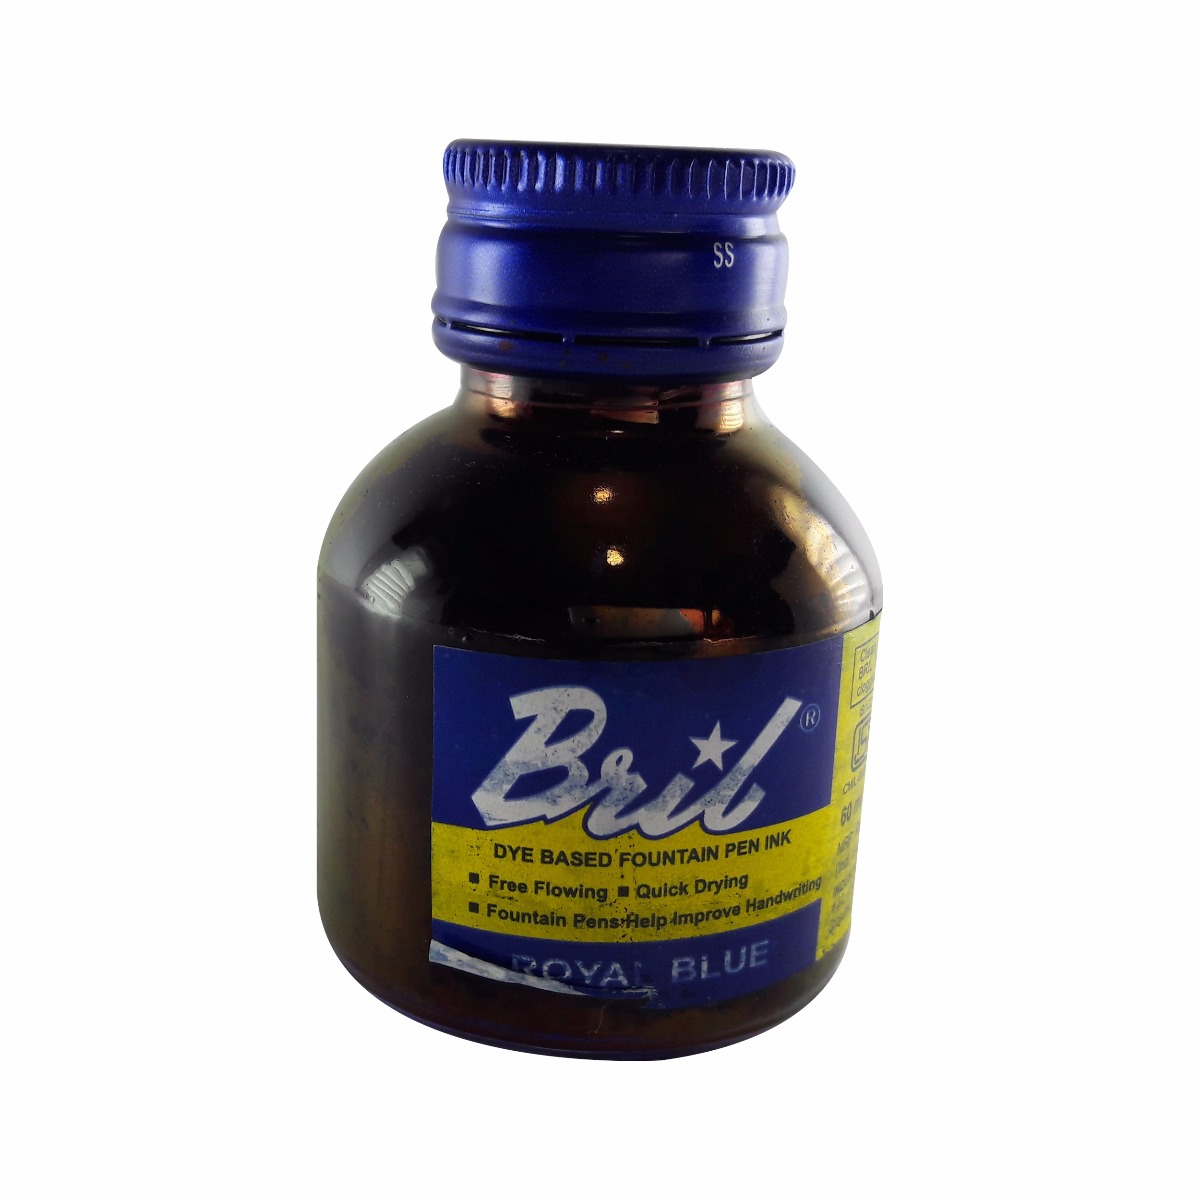 Bril Model: 70013 Royal blue color 60 ml ink bottle